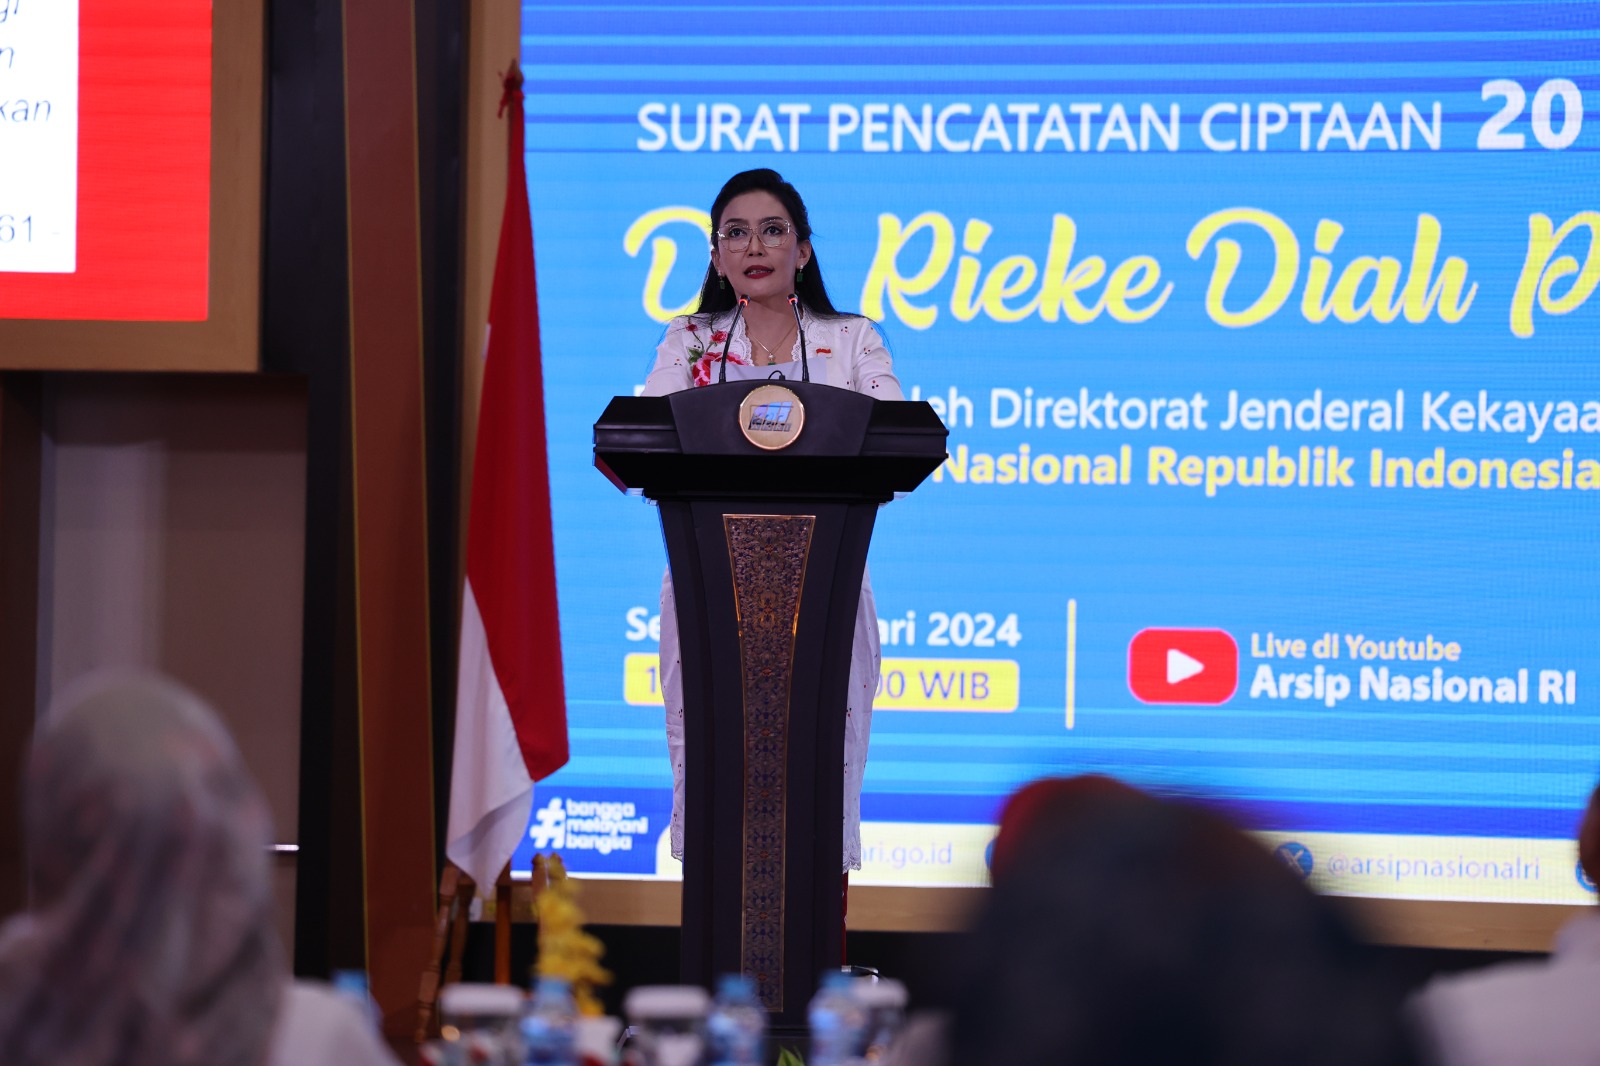 Duta Arsip Rieke: MKB Roadmap Pertama Kebijakan Pembangunan Indonesia Jadi Inspirasi Penyerahan Arsip Statis Surat Pencatatan Ciptaan Kekayaan Intelektual